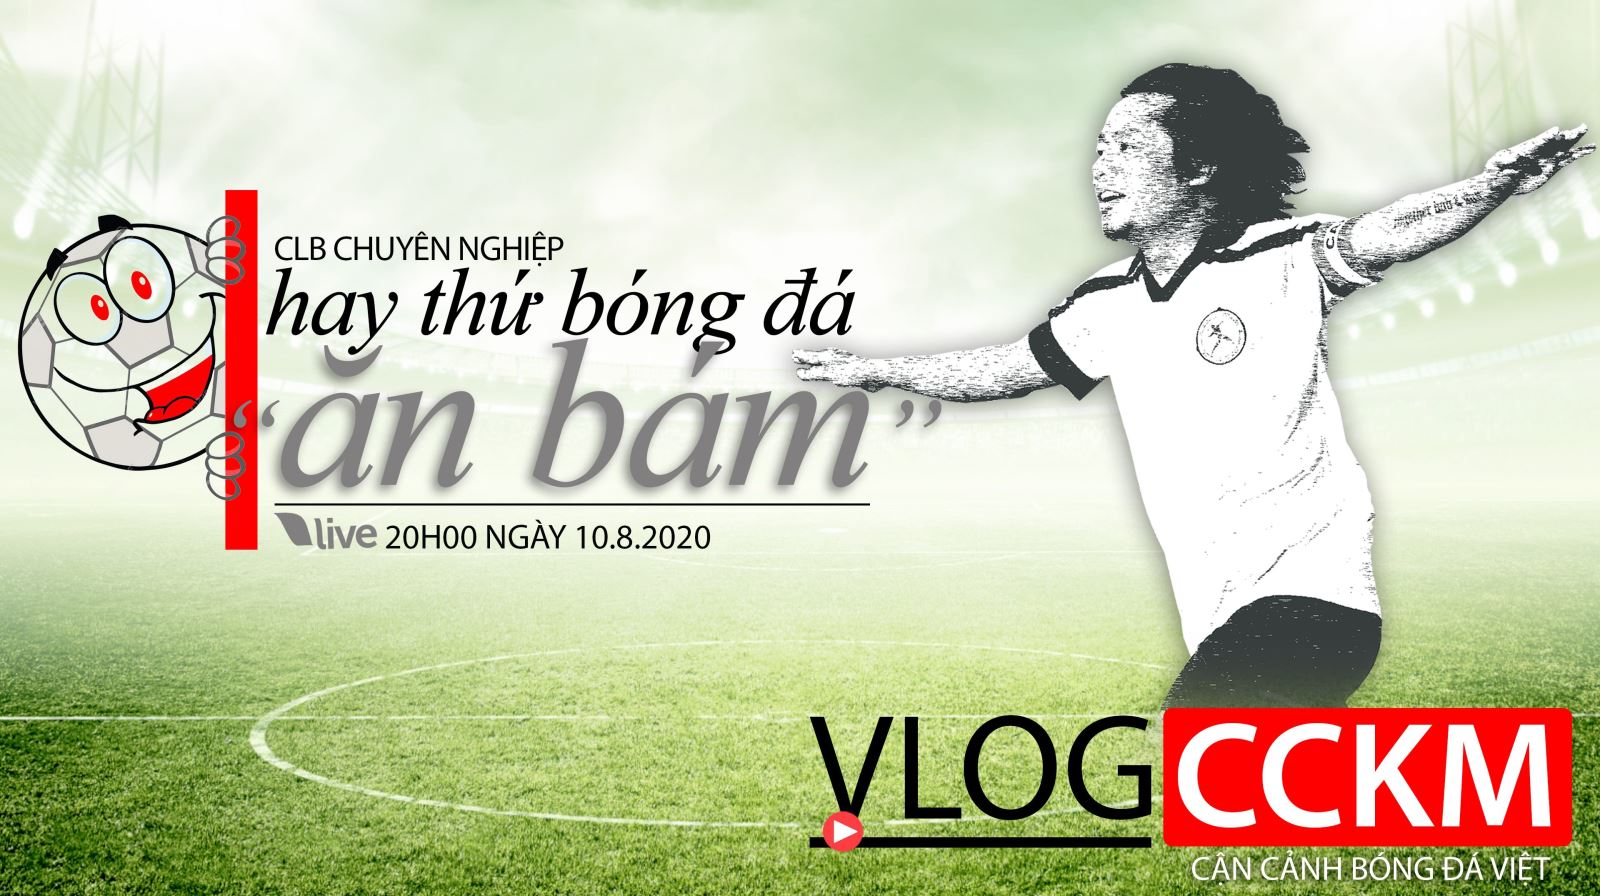 Vlog CCKM - Cận cảnh bóng đá Việt. Số 21: CLB chuyên nghiệp hay thứ bóng đá "ăn bám" ở Việt Nam?